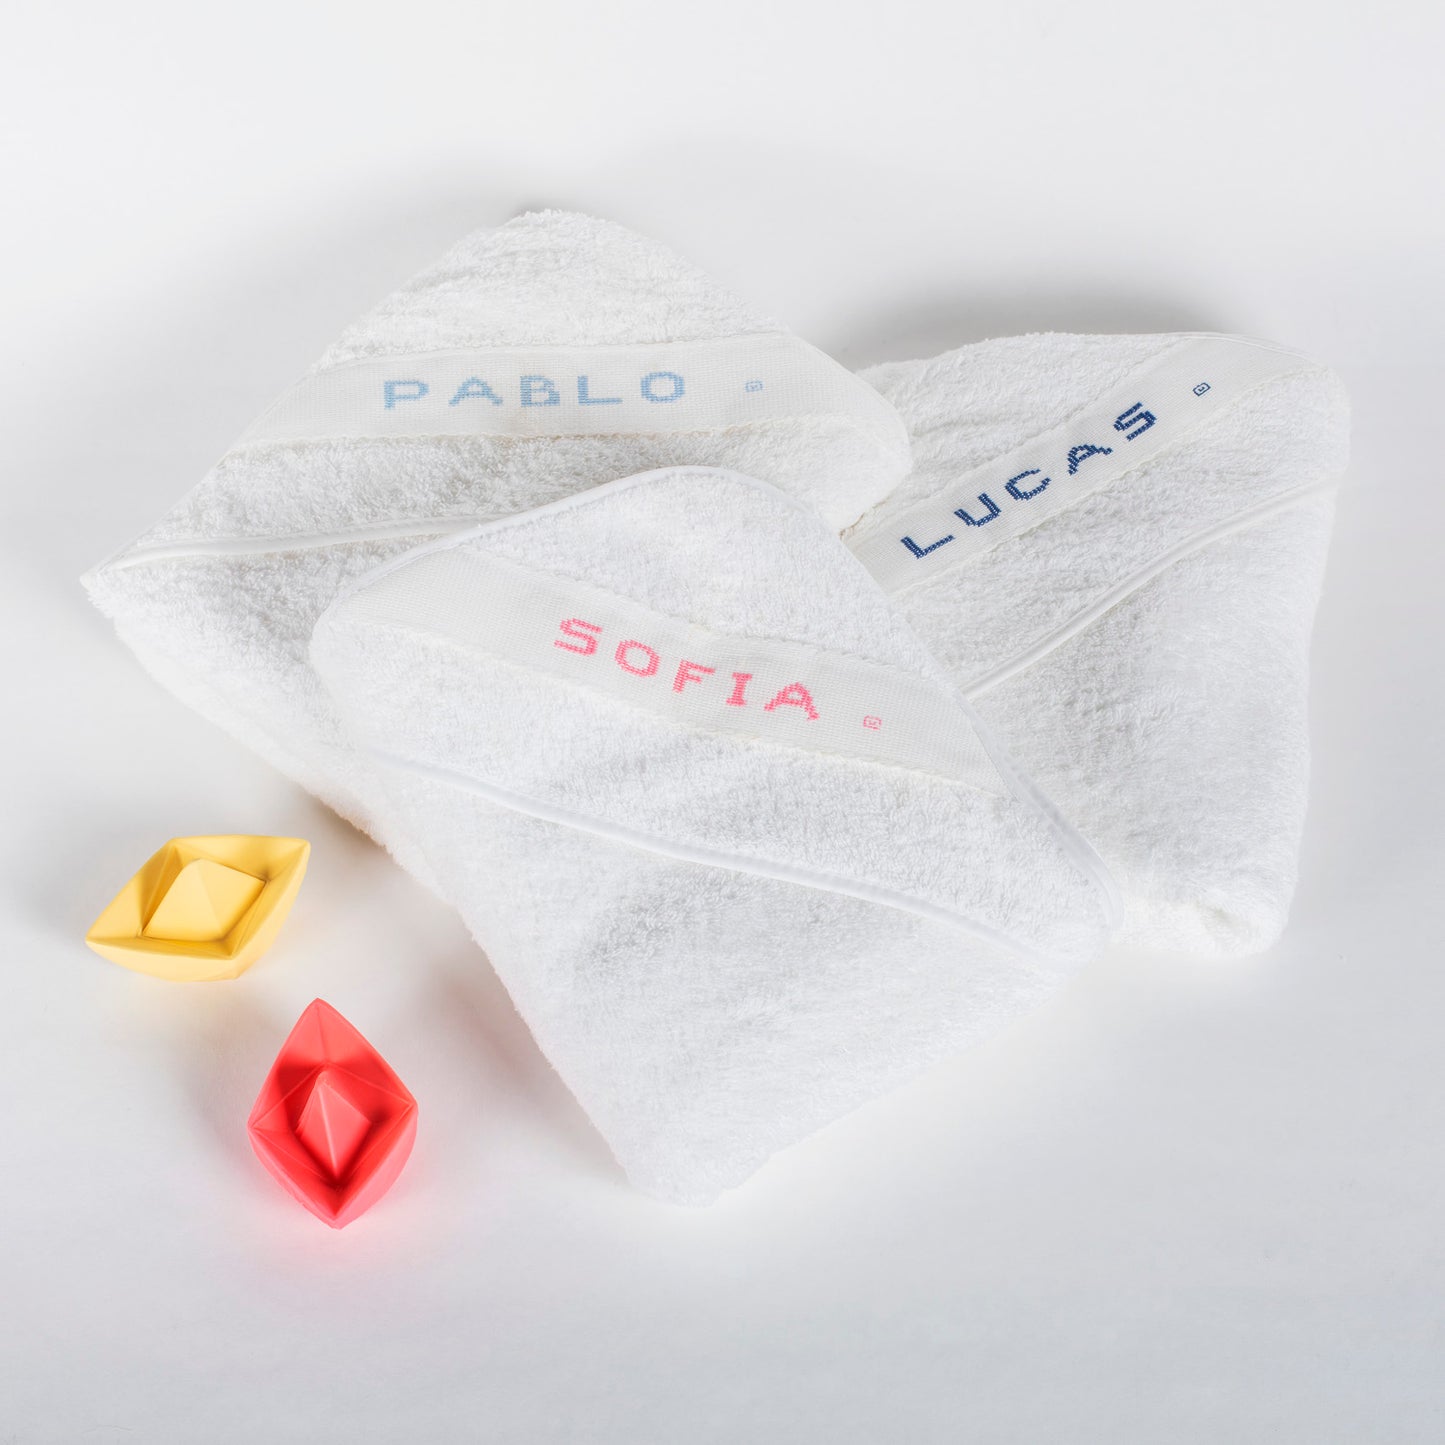 Capas de baño para bebé bordadas con el nombre en diferentes colores